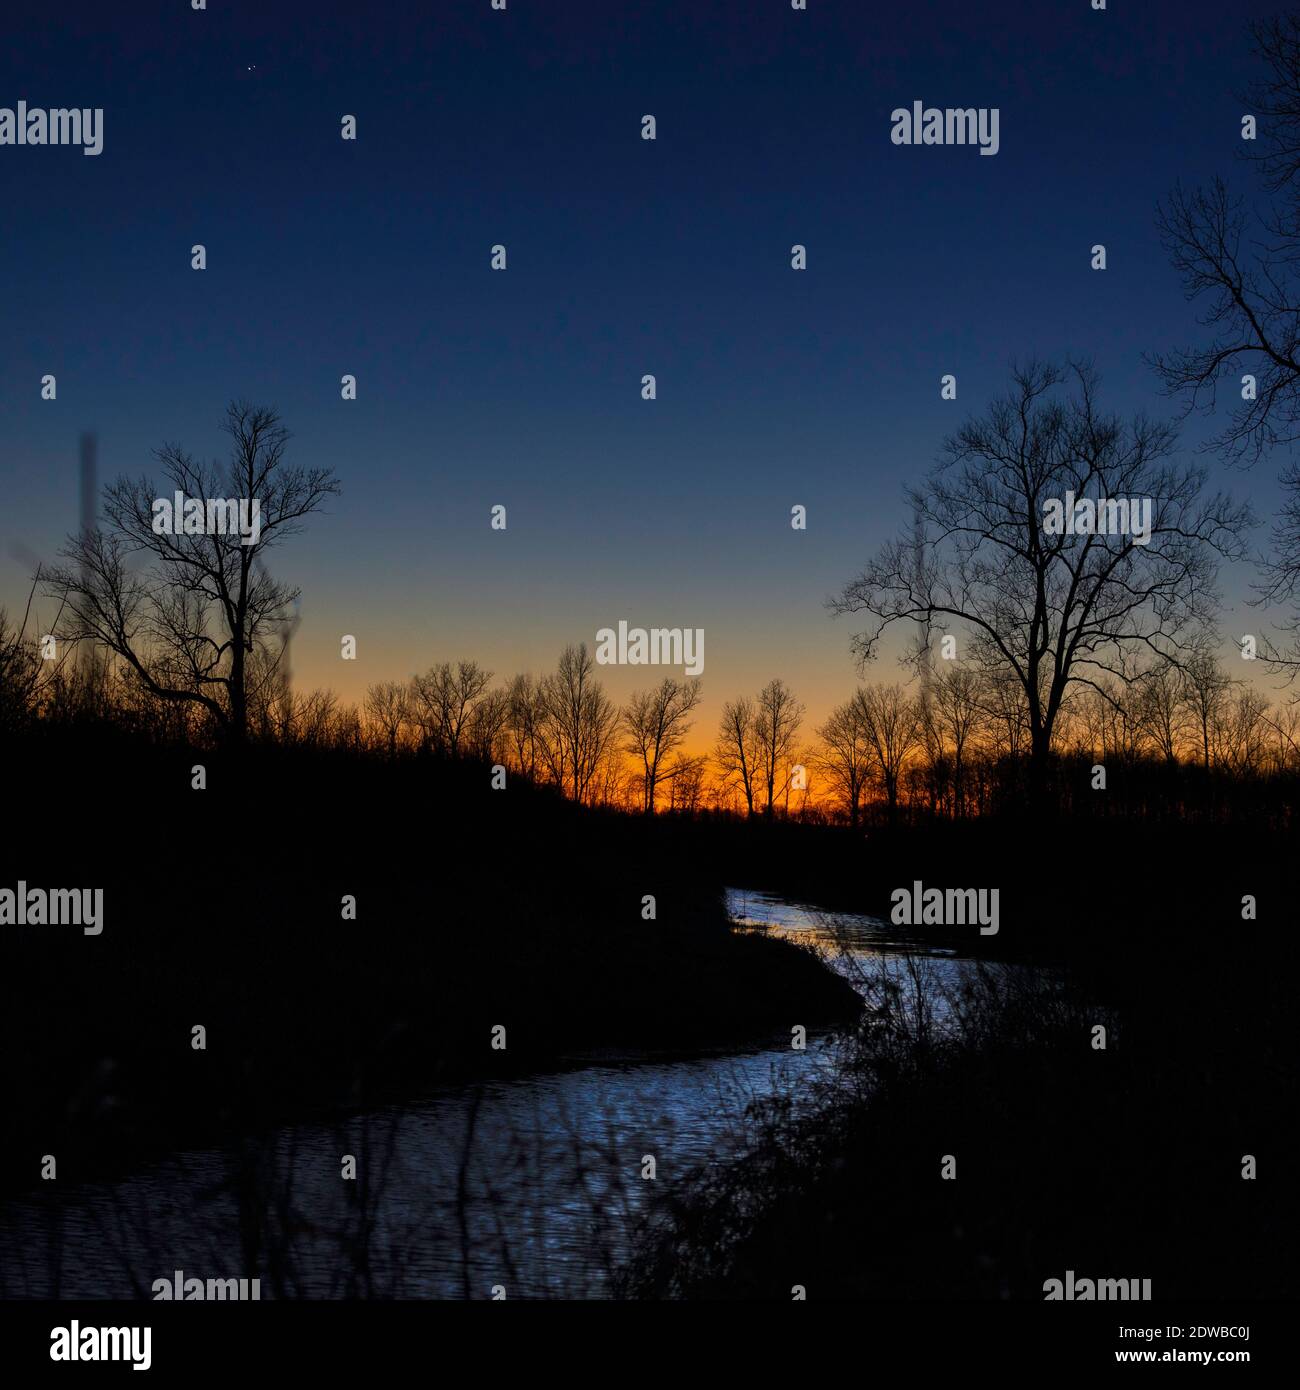 La congiunzione planetaria del dicembre 2020 tra Giove e Saturno vista con i colori del tramonto su un torrente brushy nella contea di Jackson, IN, Stati Uniti. Foto Stock